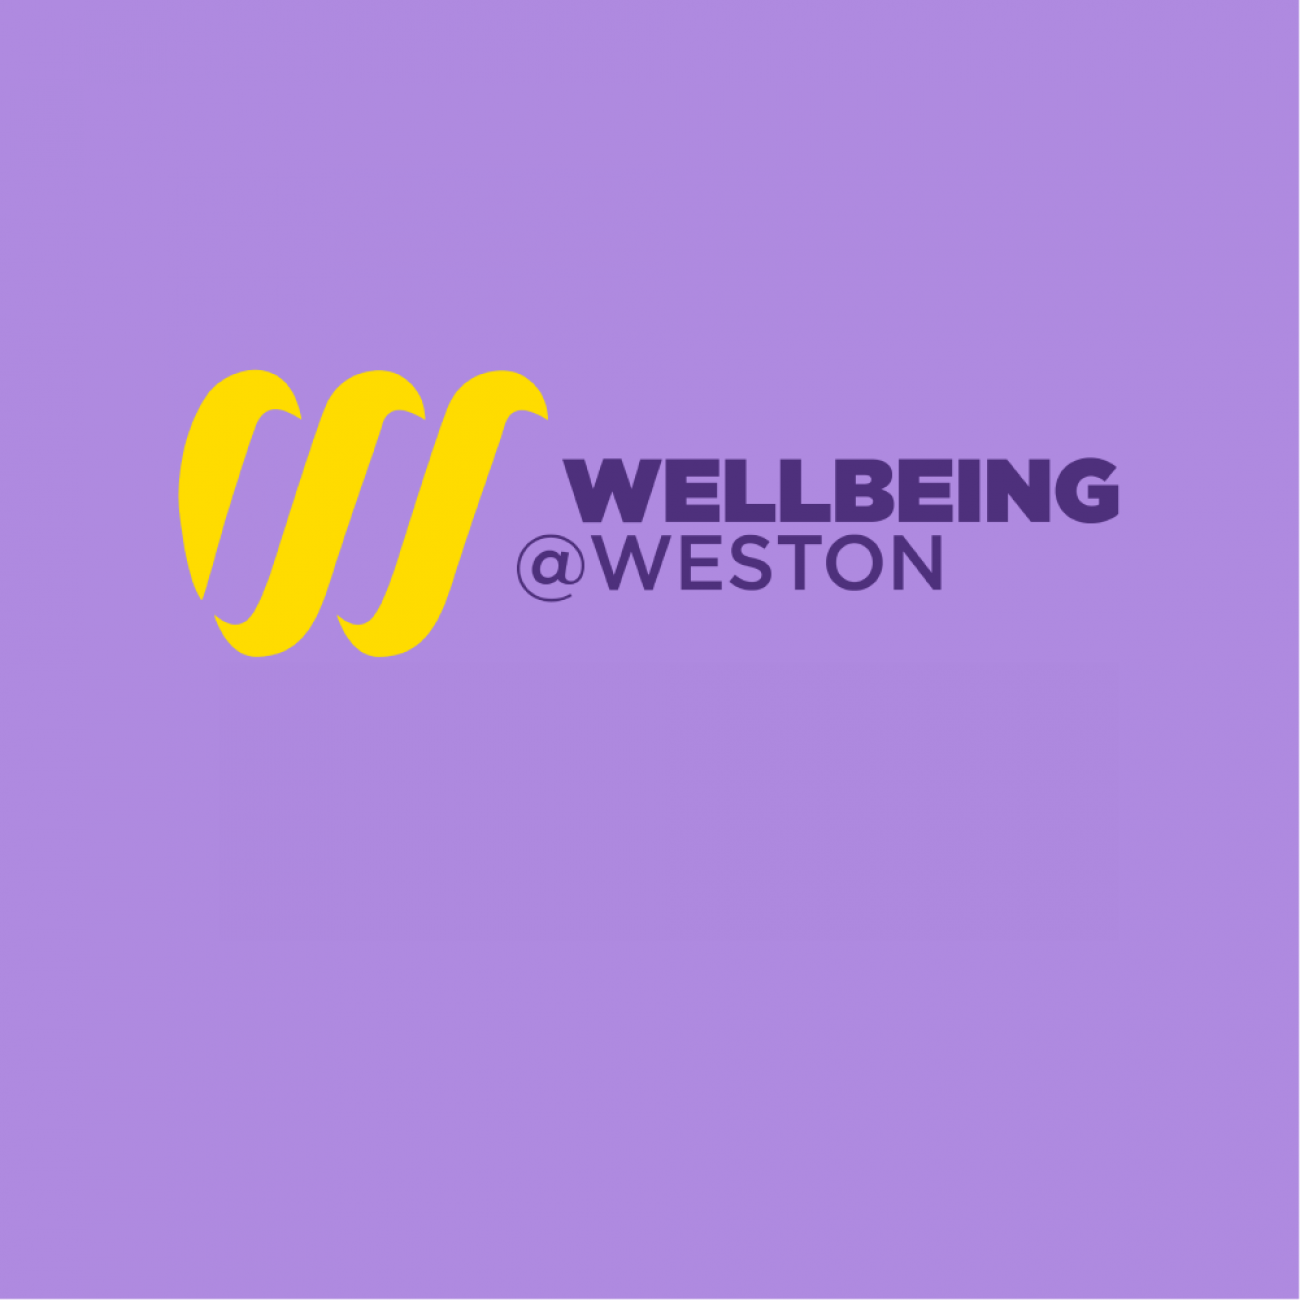 Wellbeing@weston